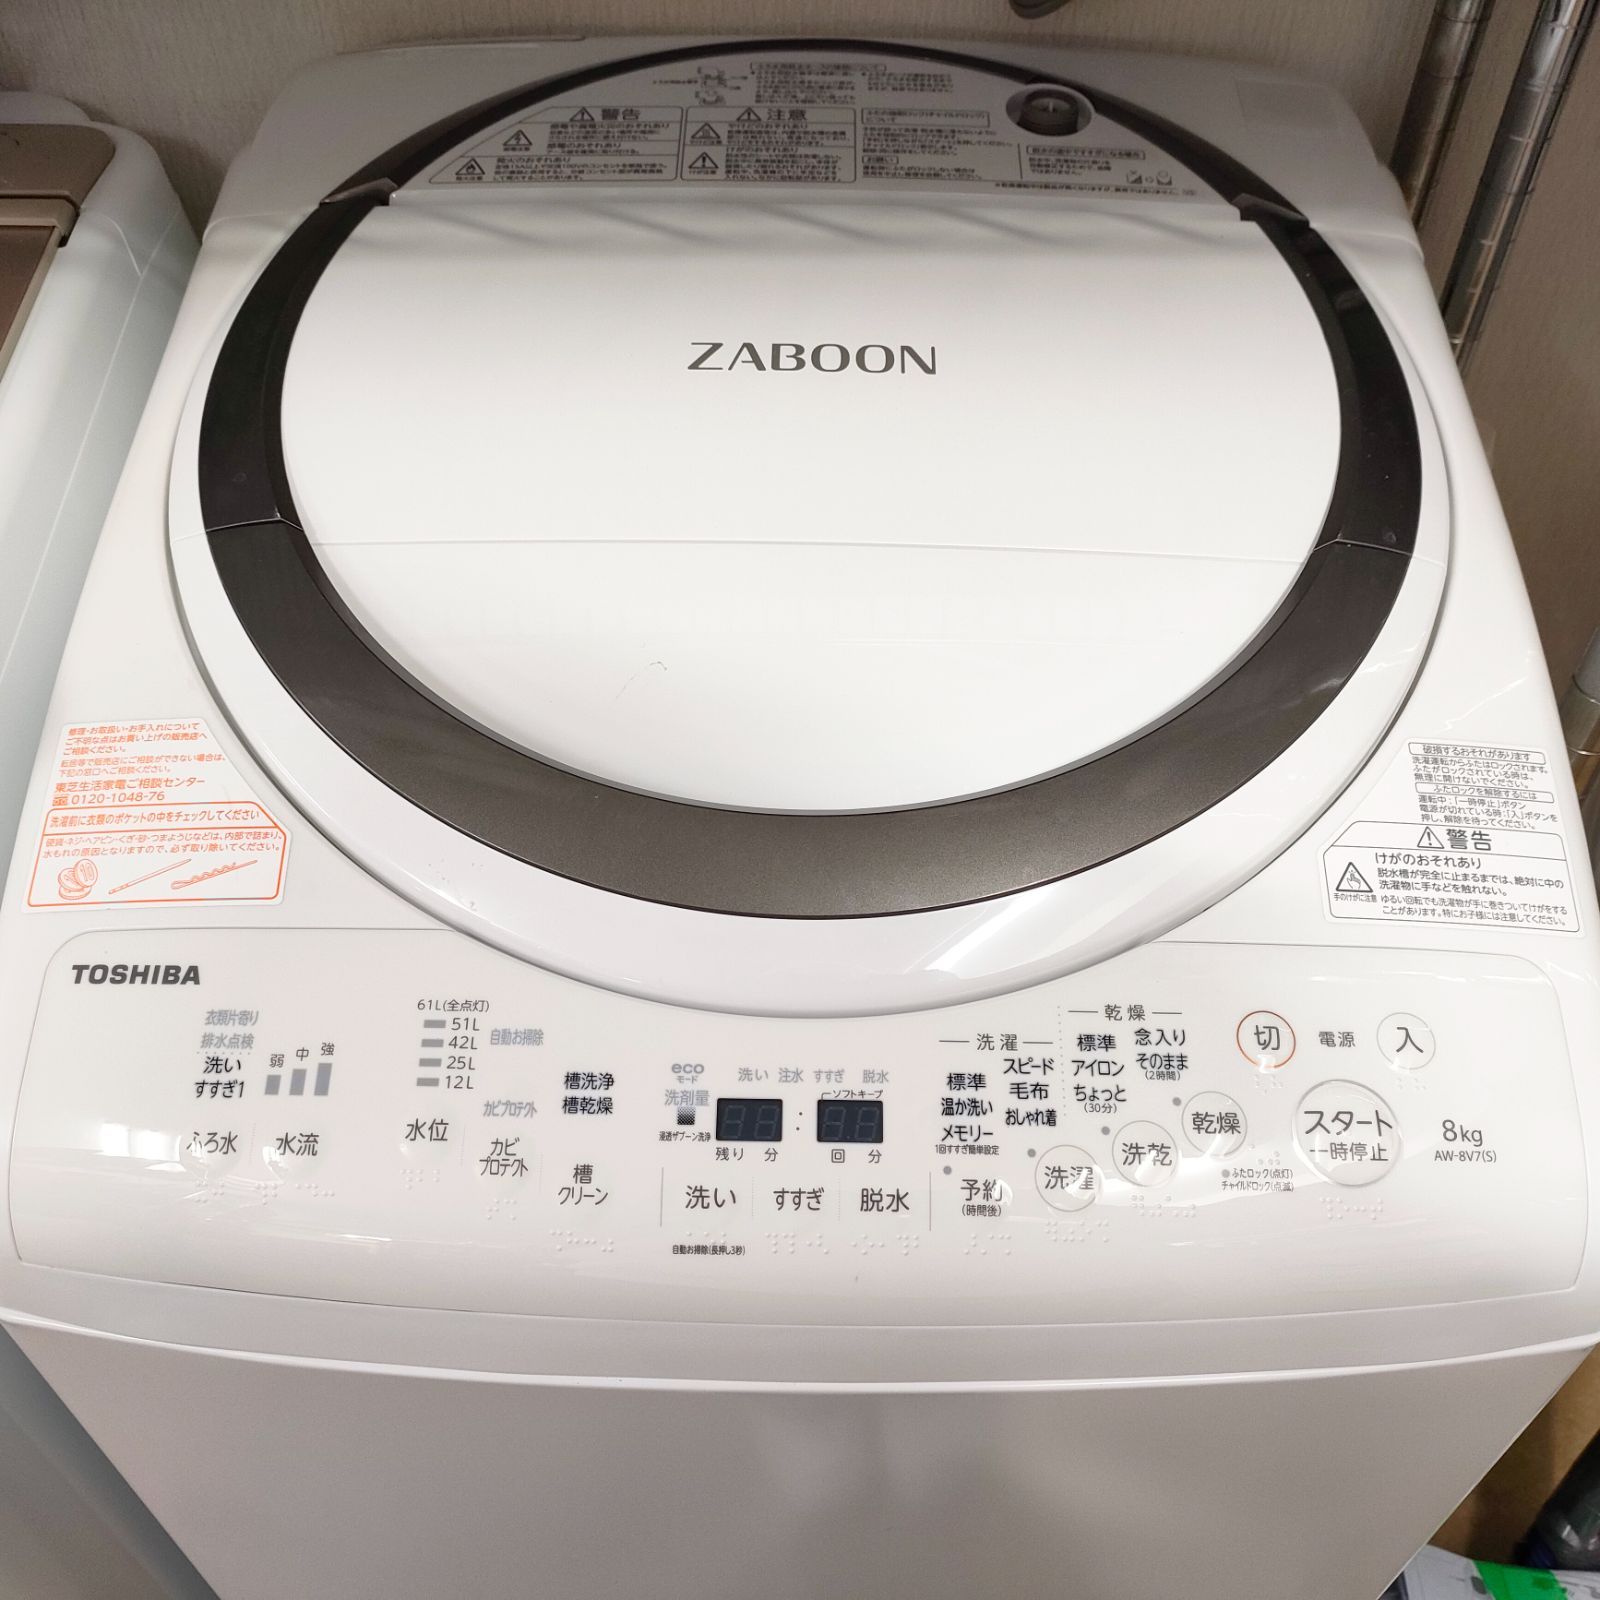 ◇TOSHIBA 洗濯乾燥機 ZABOON AW-8V7 - メルカリ